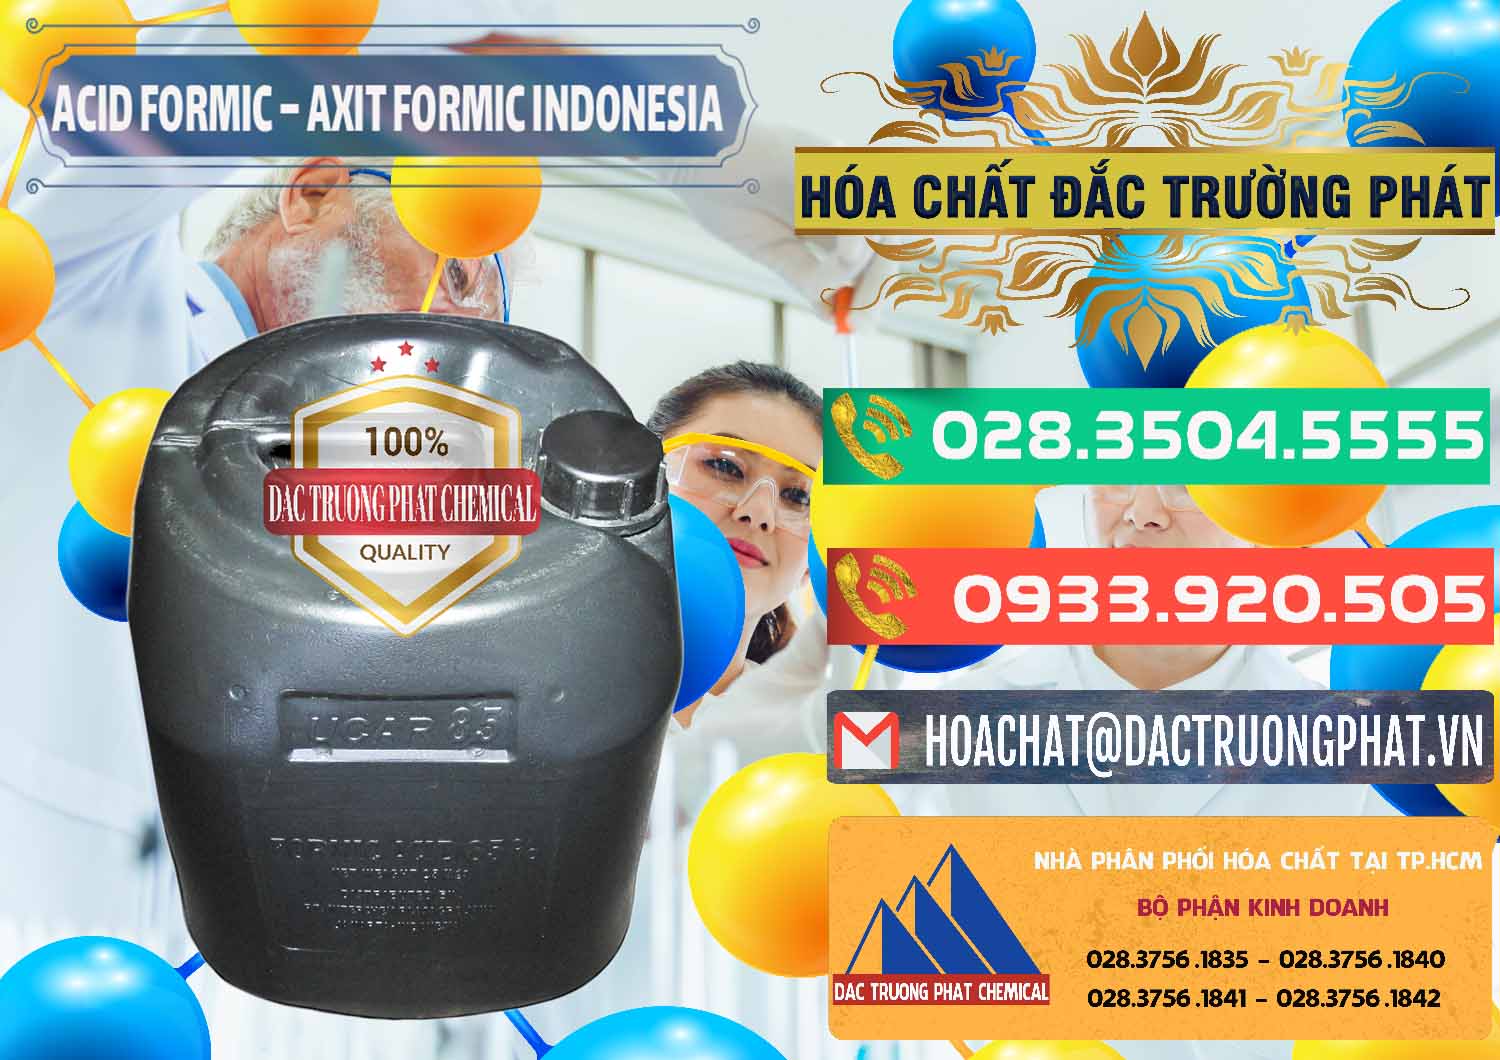 Nơi chuyên bán & cung cấp Acid Formic - Axit Formic Indonesia - 0026 - Cty phân phối _ nhập khẩu hóa chất tại TP.HCM - congtyhoachat.com.vn